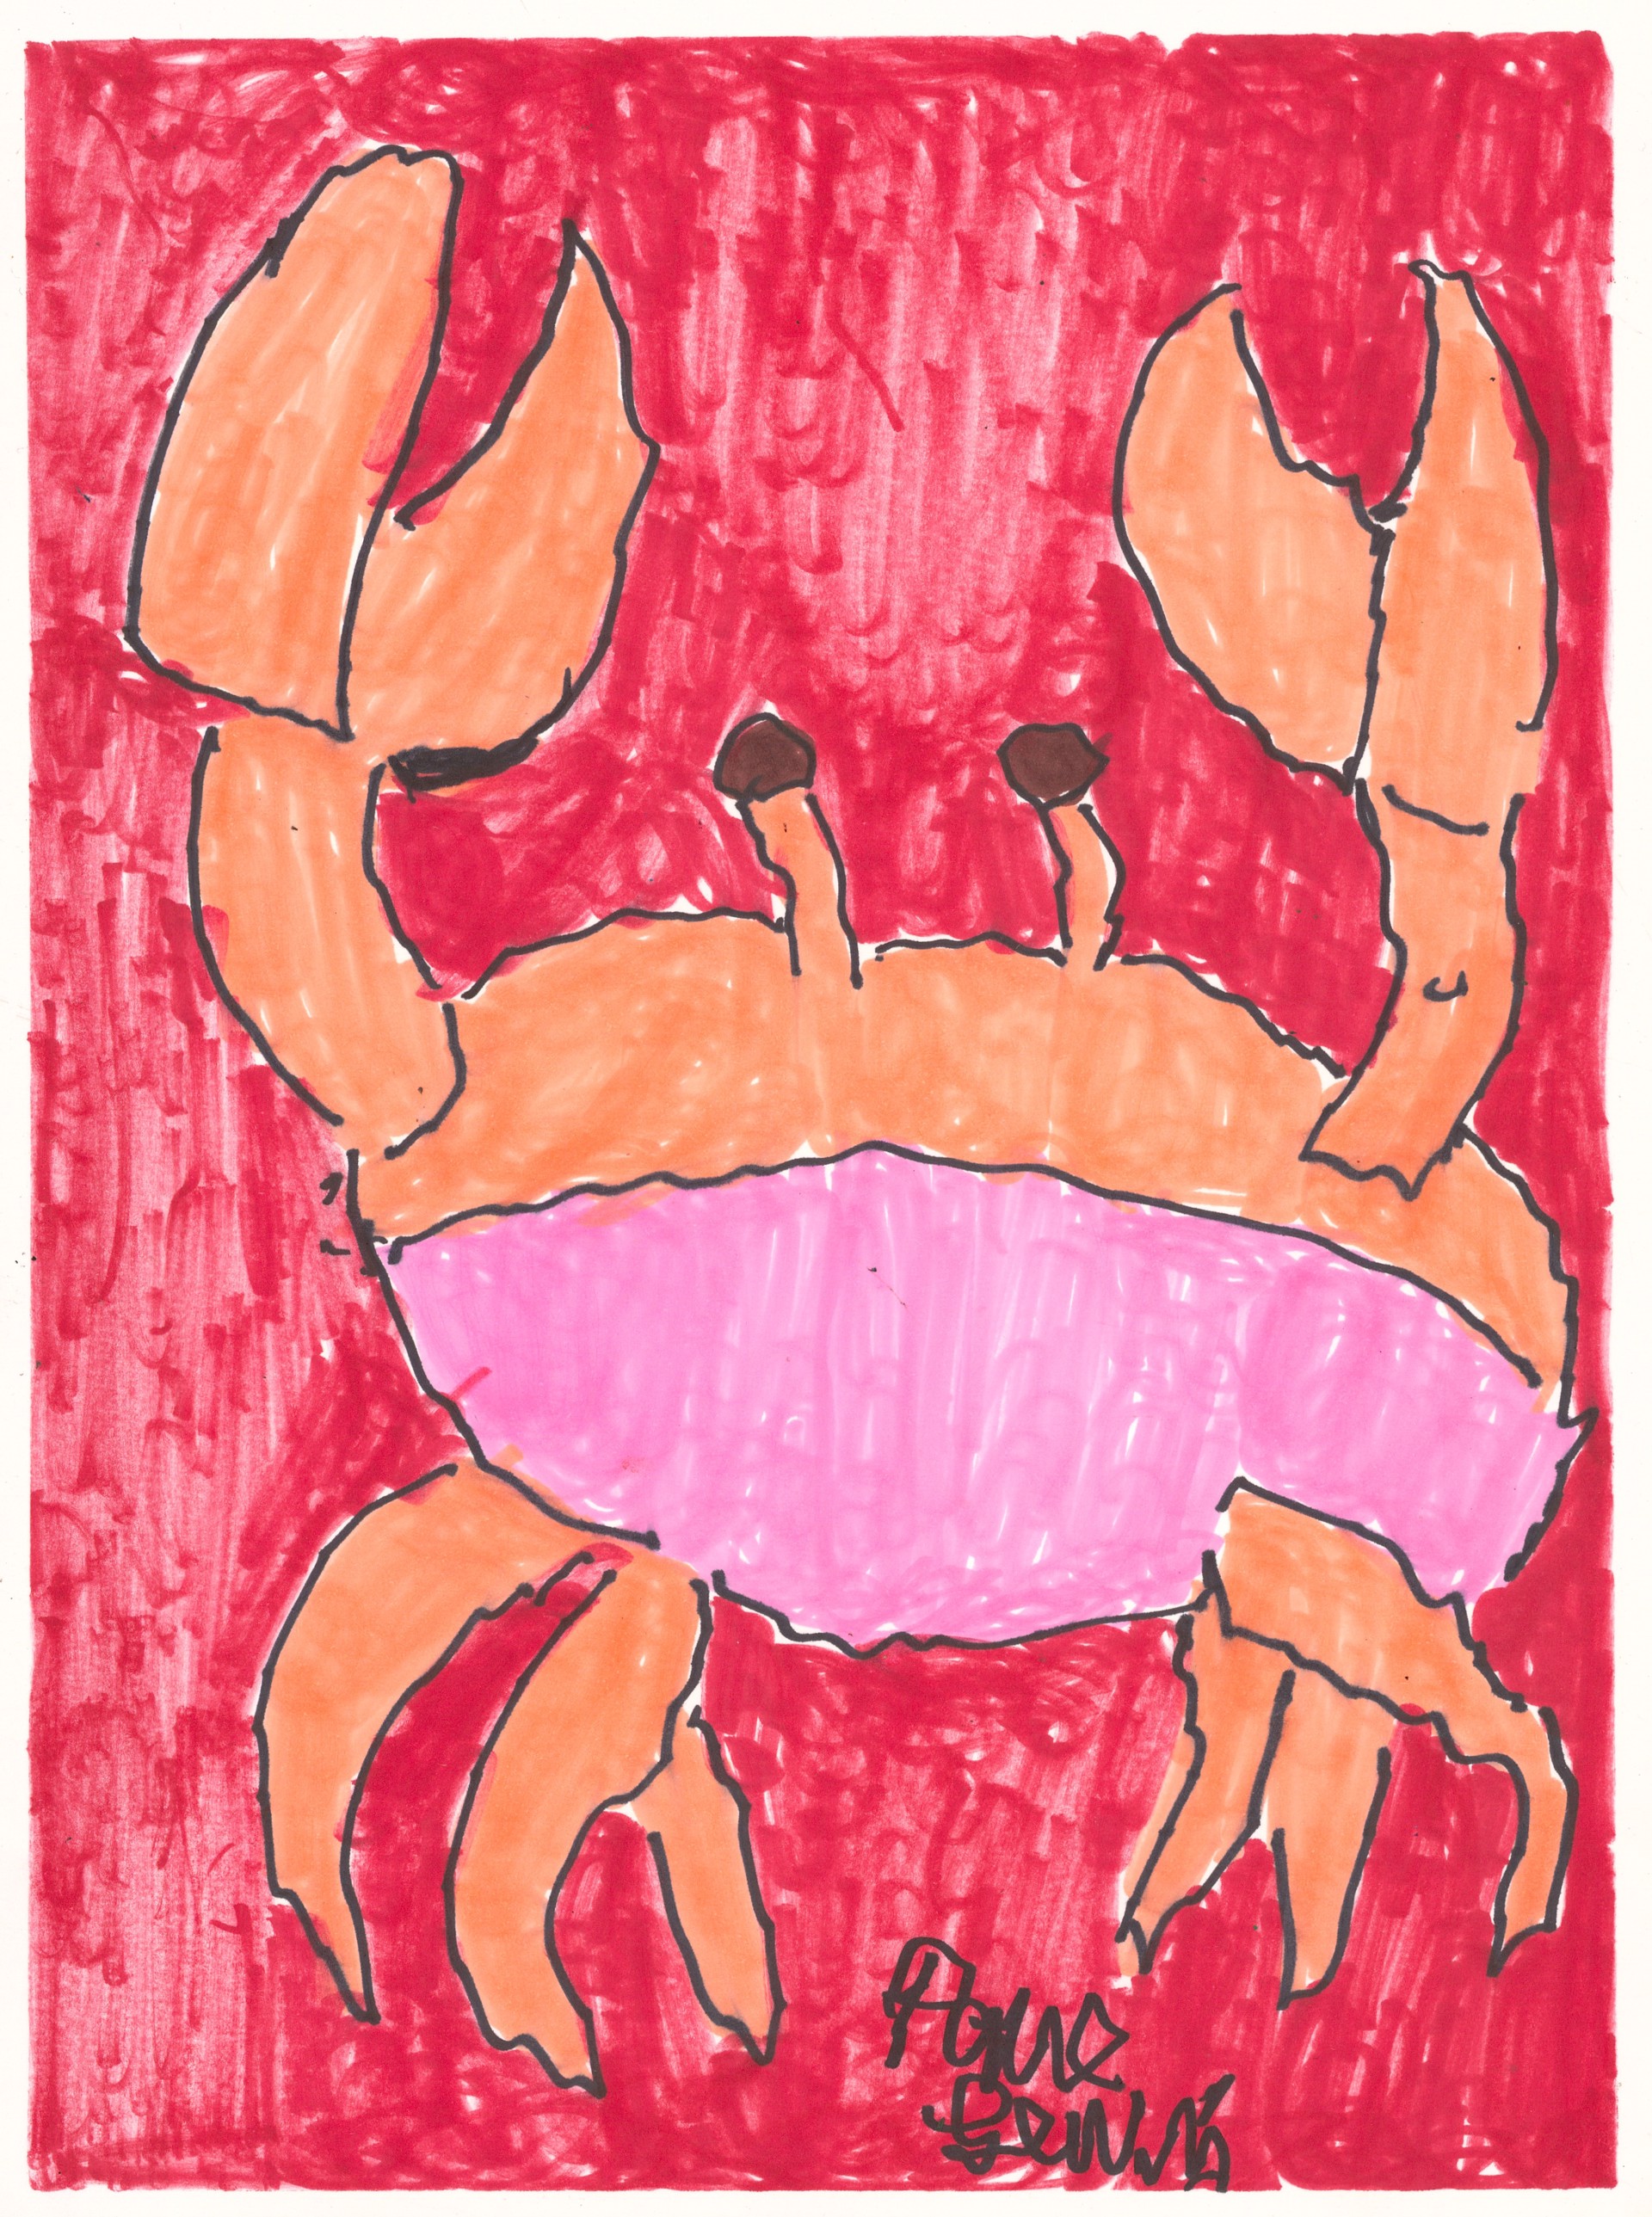 Crab by Paul Lewis